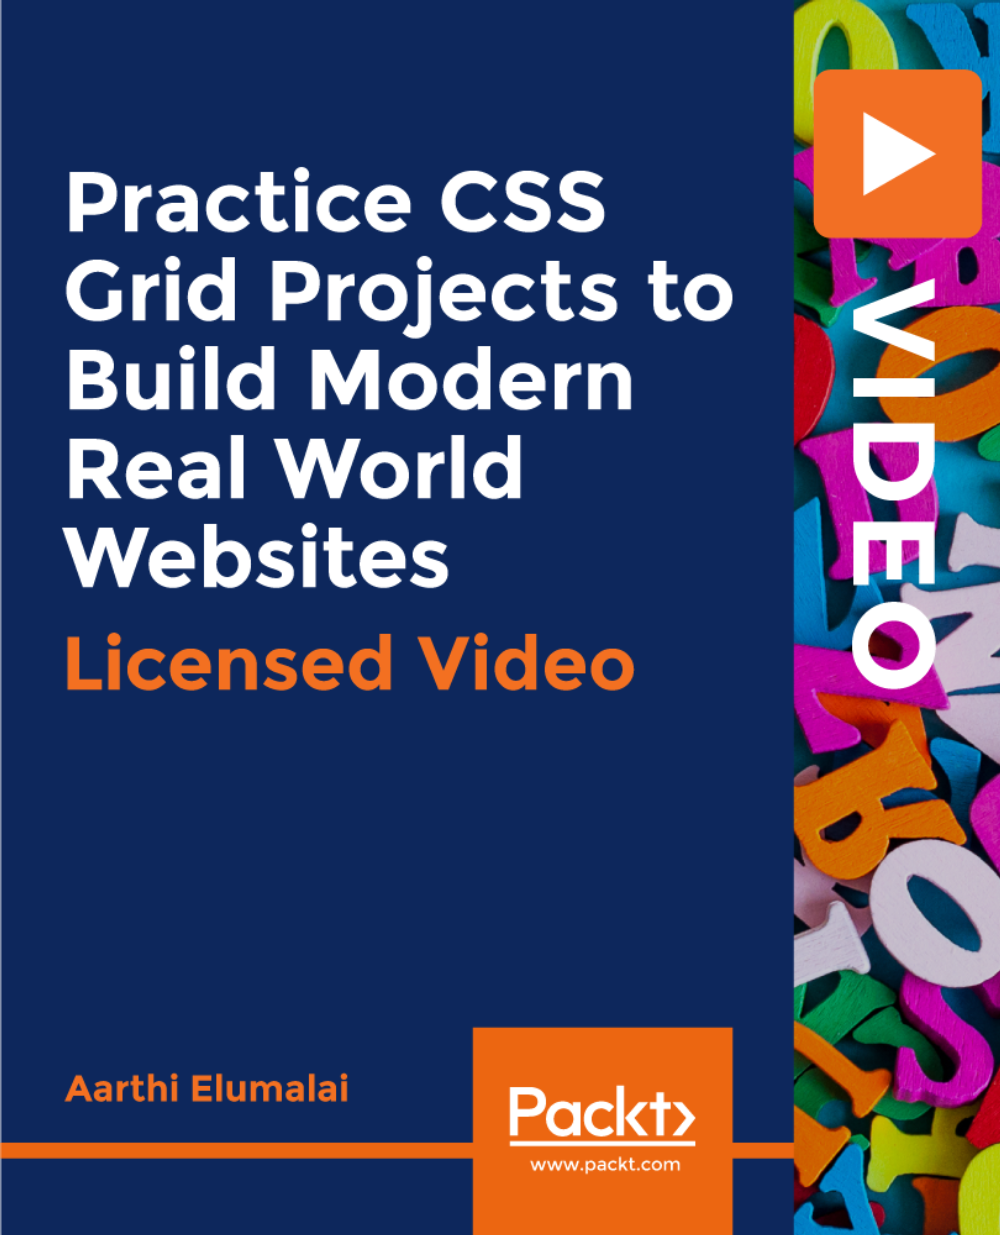 آموزش پروژه های CSS Grid را برای ساخت وب سایت های دنیای واقعی مدرن تمرین کنید [ویدئو]